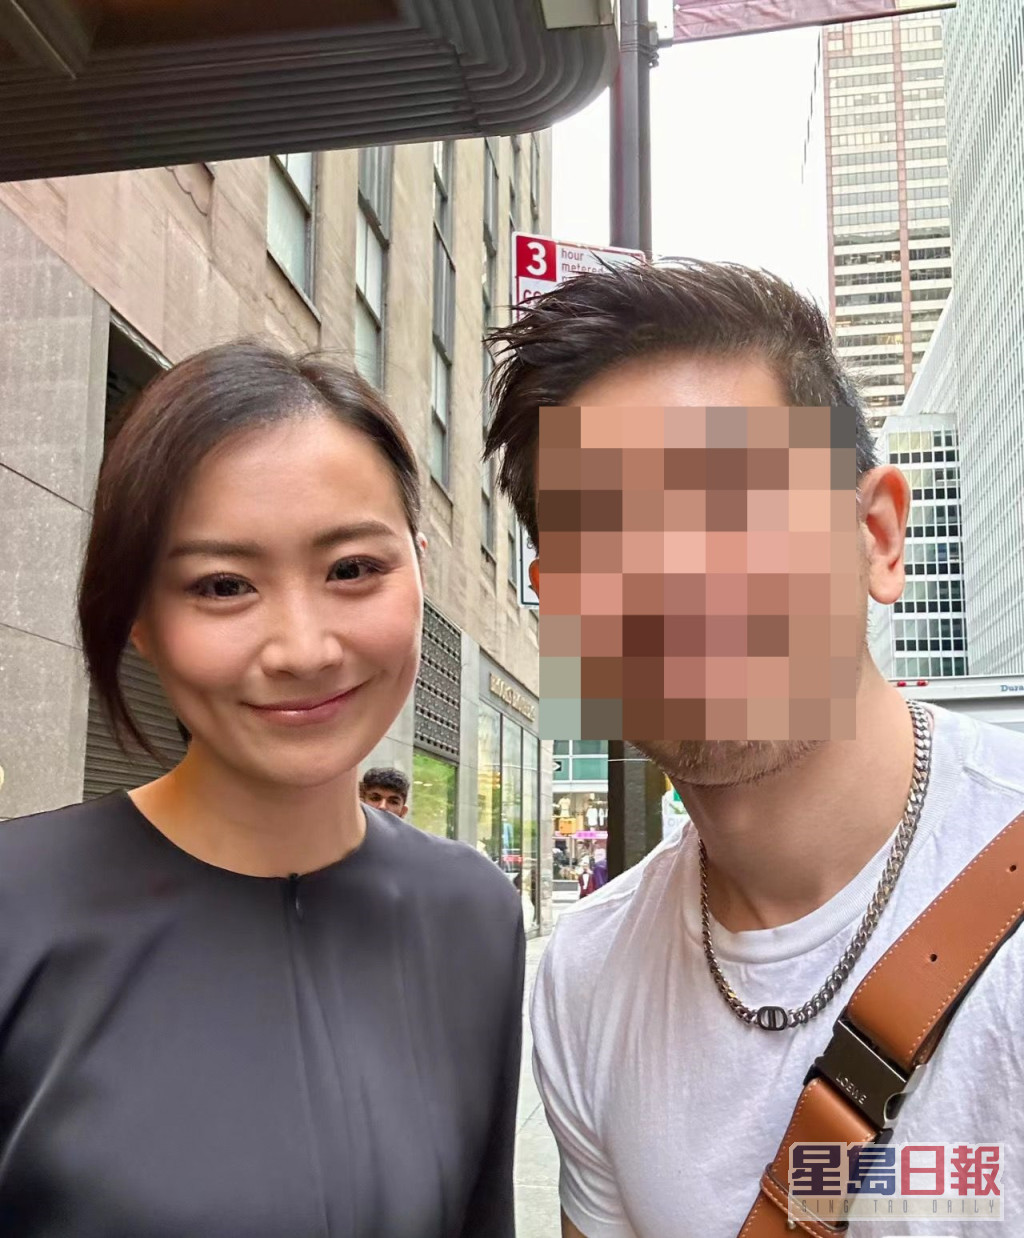 該網民近日貼出與陳法拉的合照，從上一張照片的背景及衣着推測，相信是同一日影。